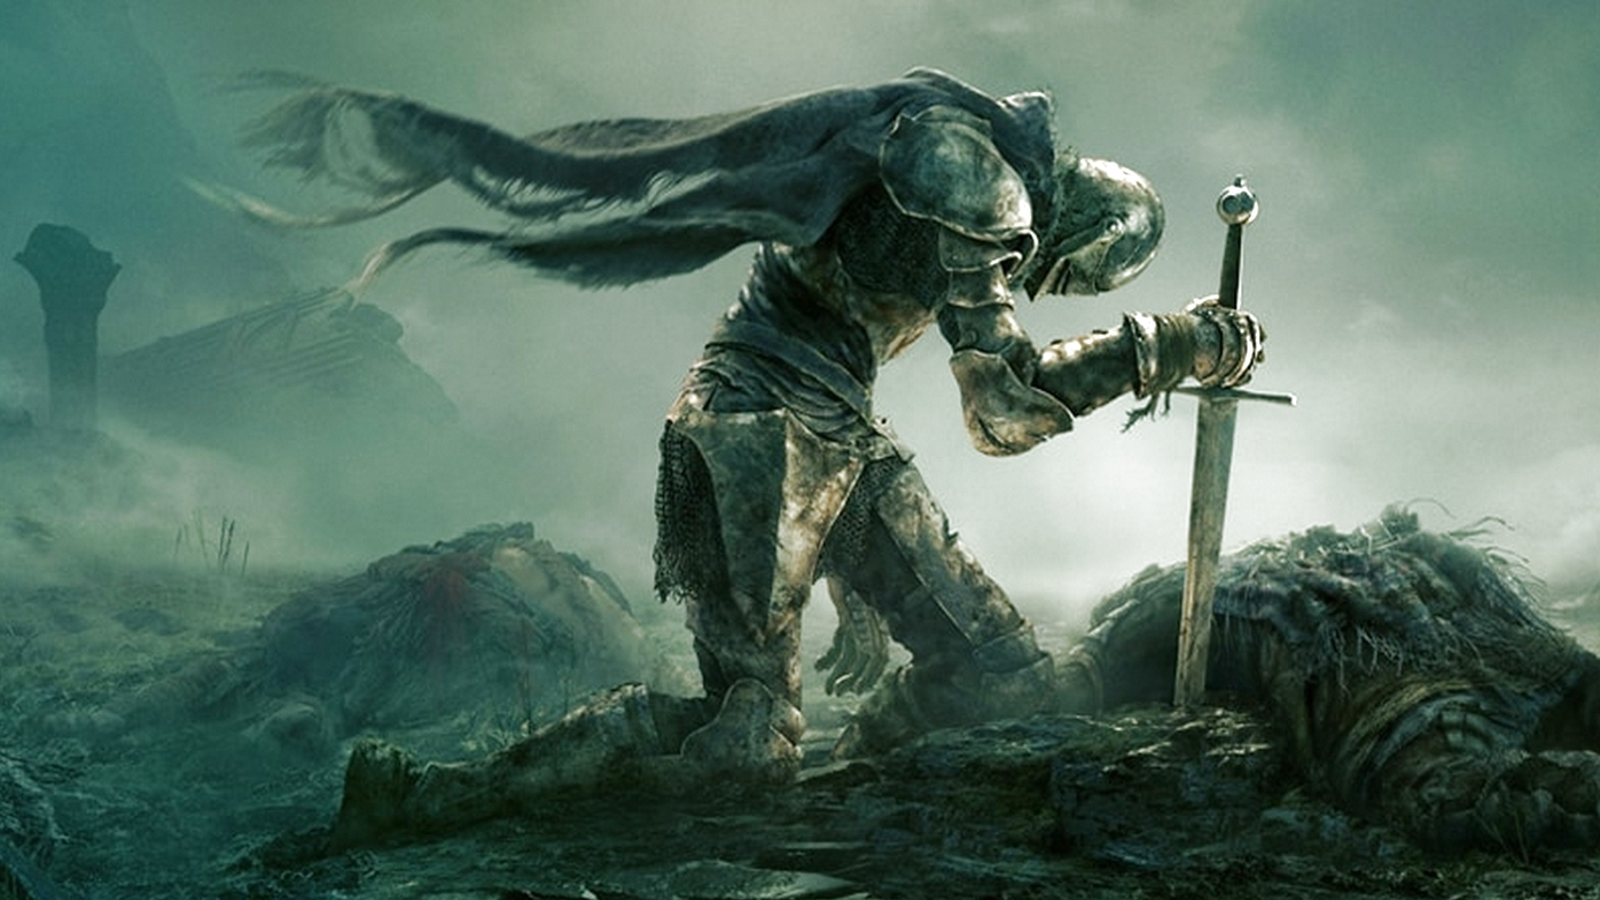 10 jogos parecidos com Dark Souls no PC, PlayStation e outras plataformas -  Olhar Digital